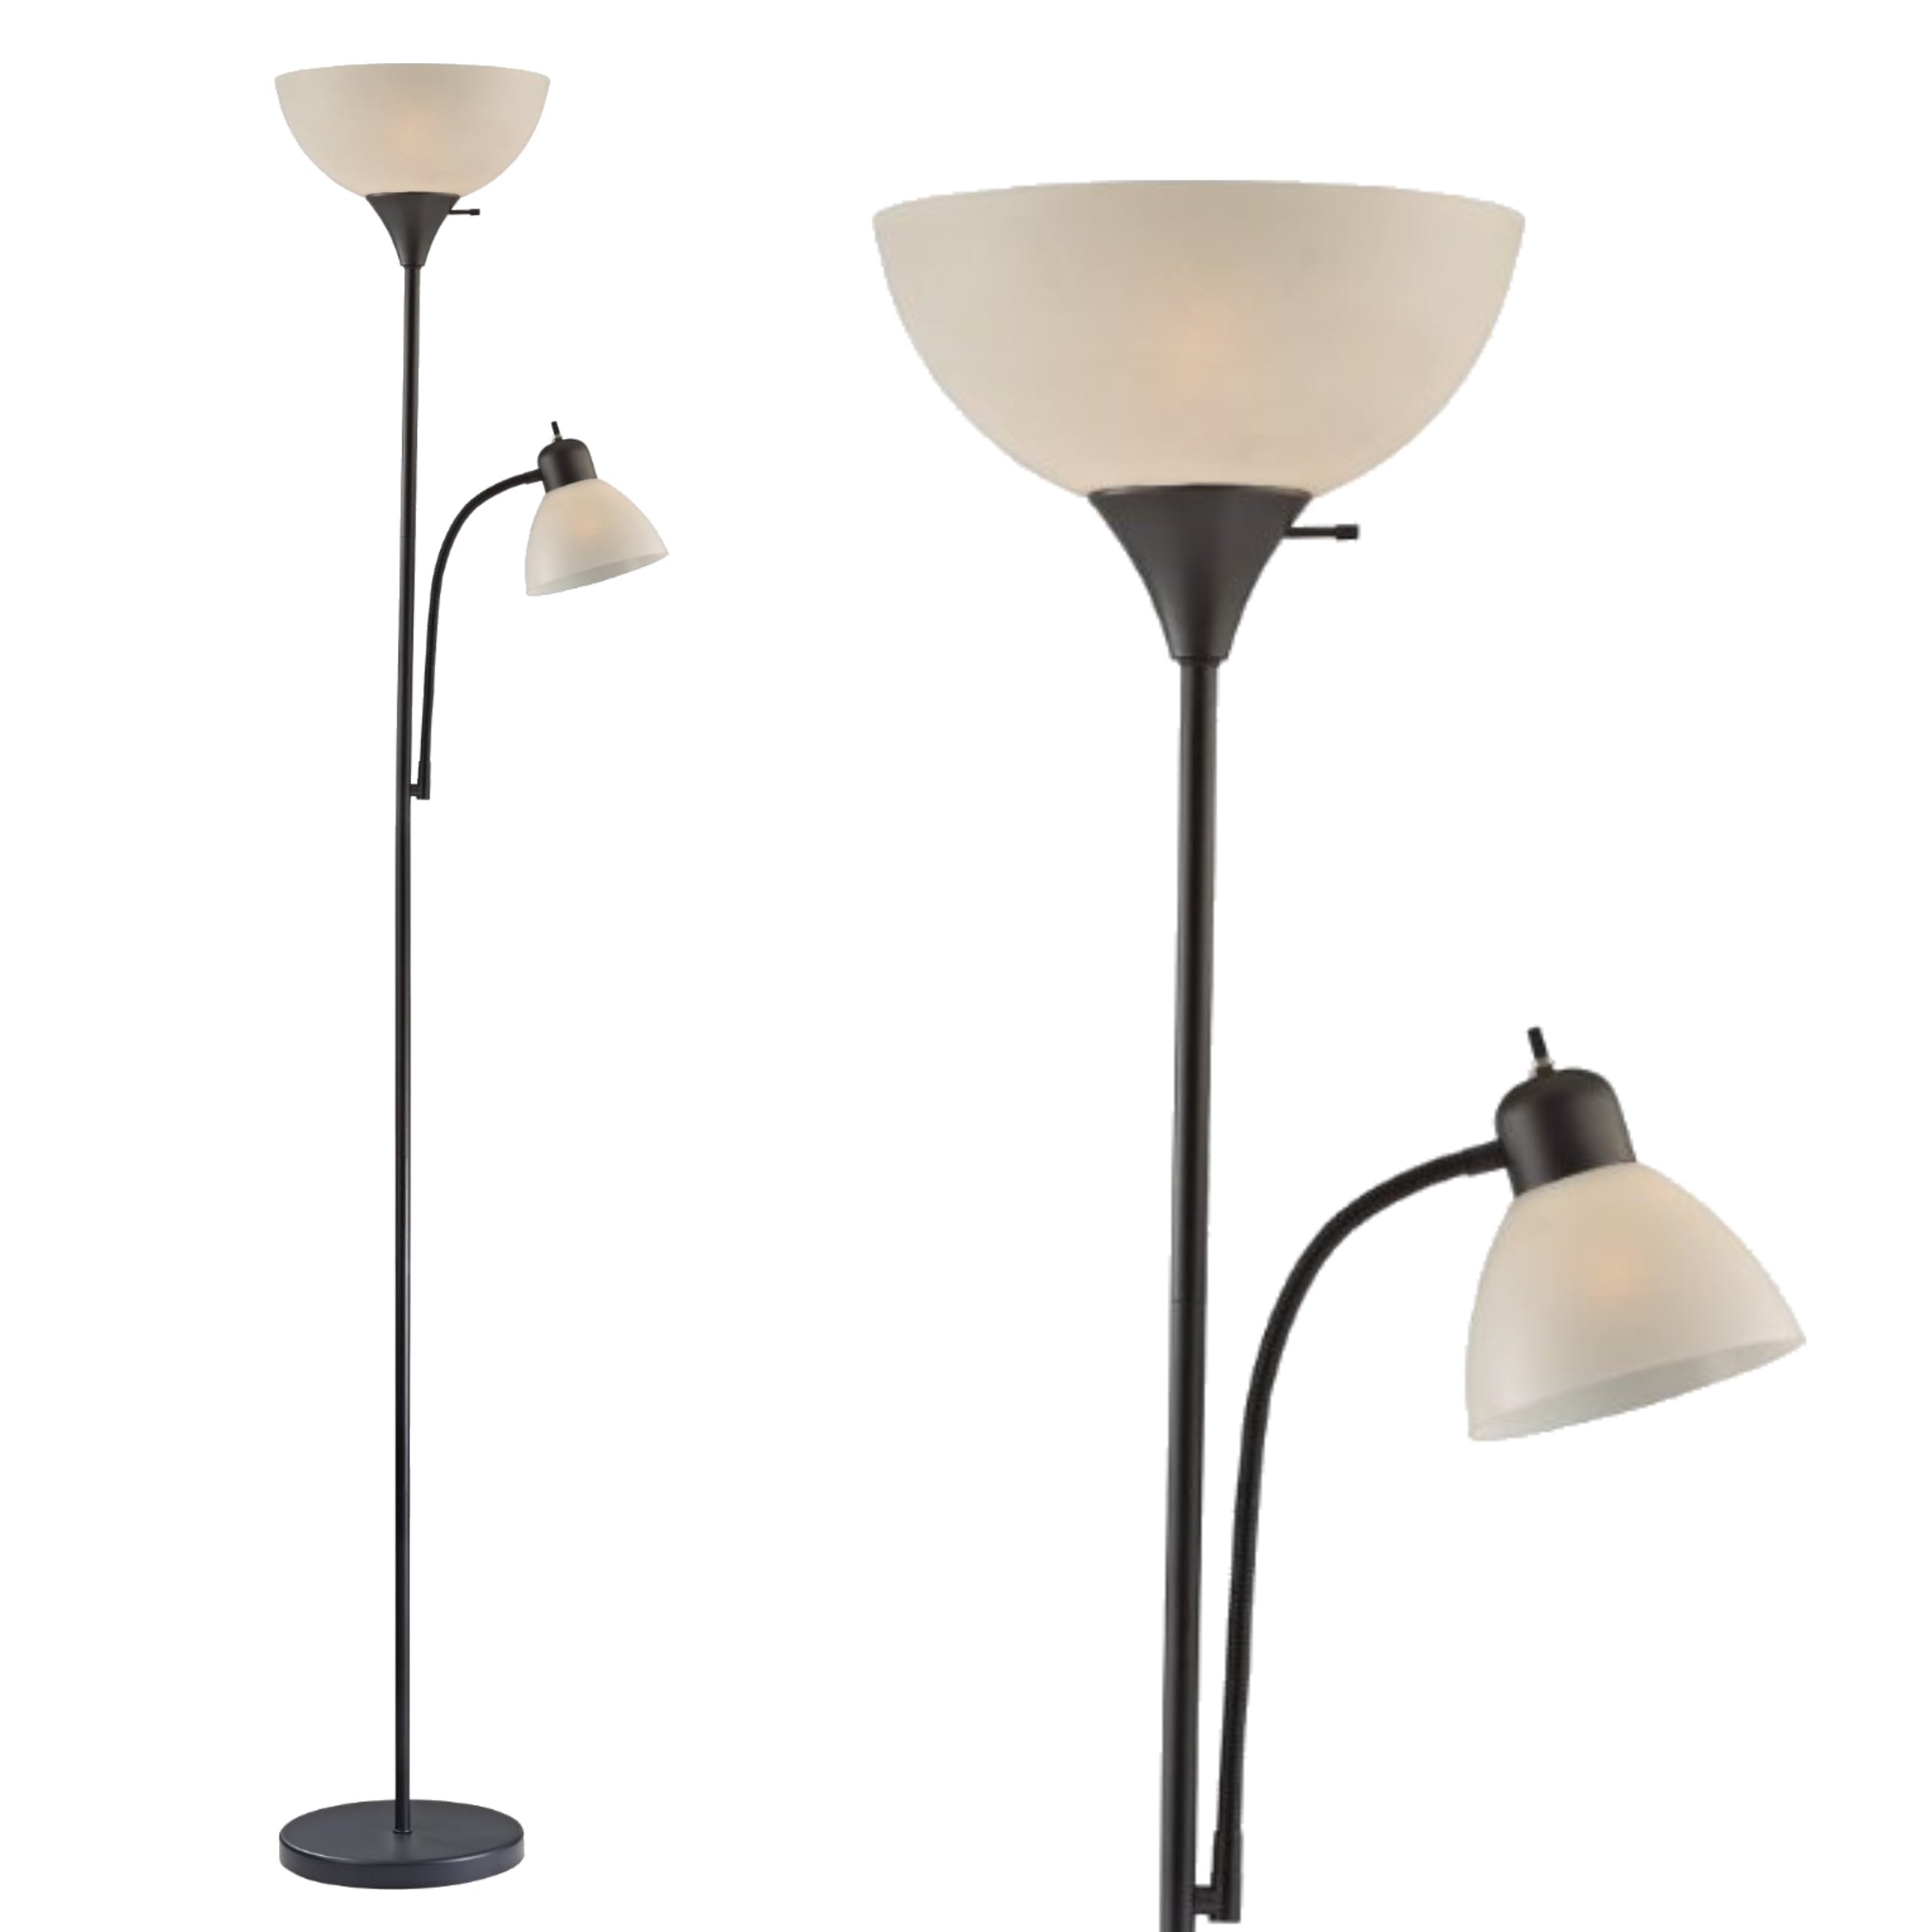 Light Accents 150 Watt Floor Lamp with Side Reading Light   Floor Lamps ...